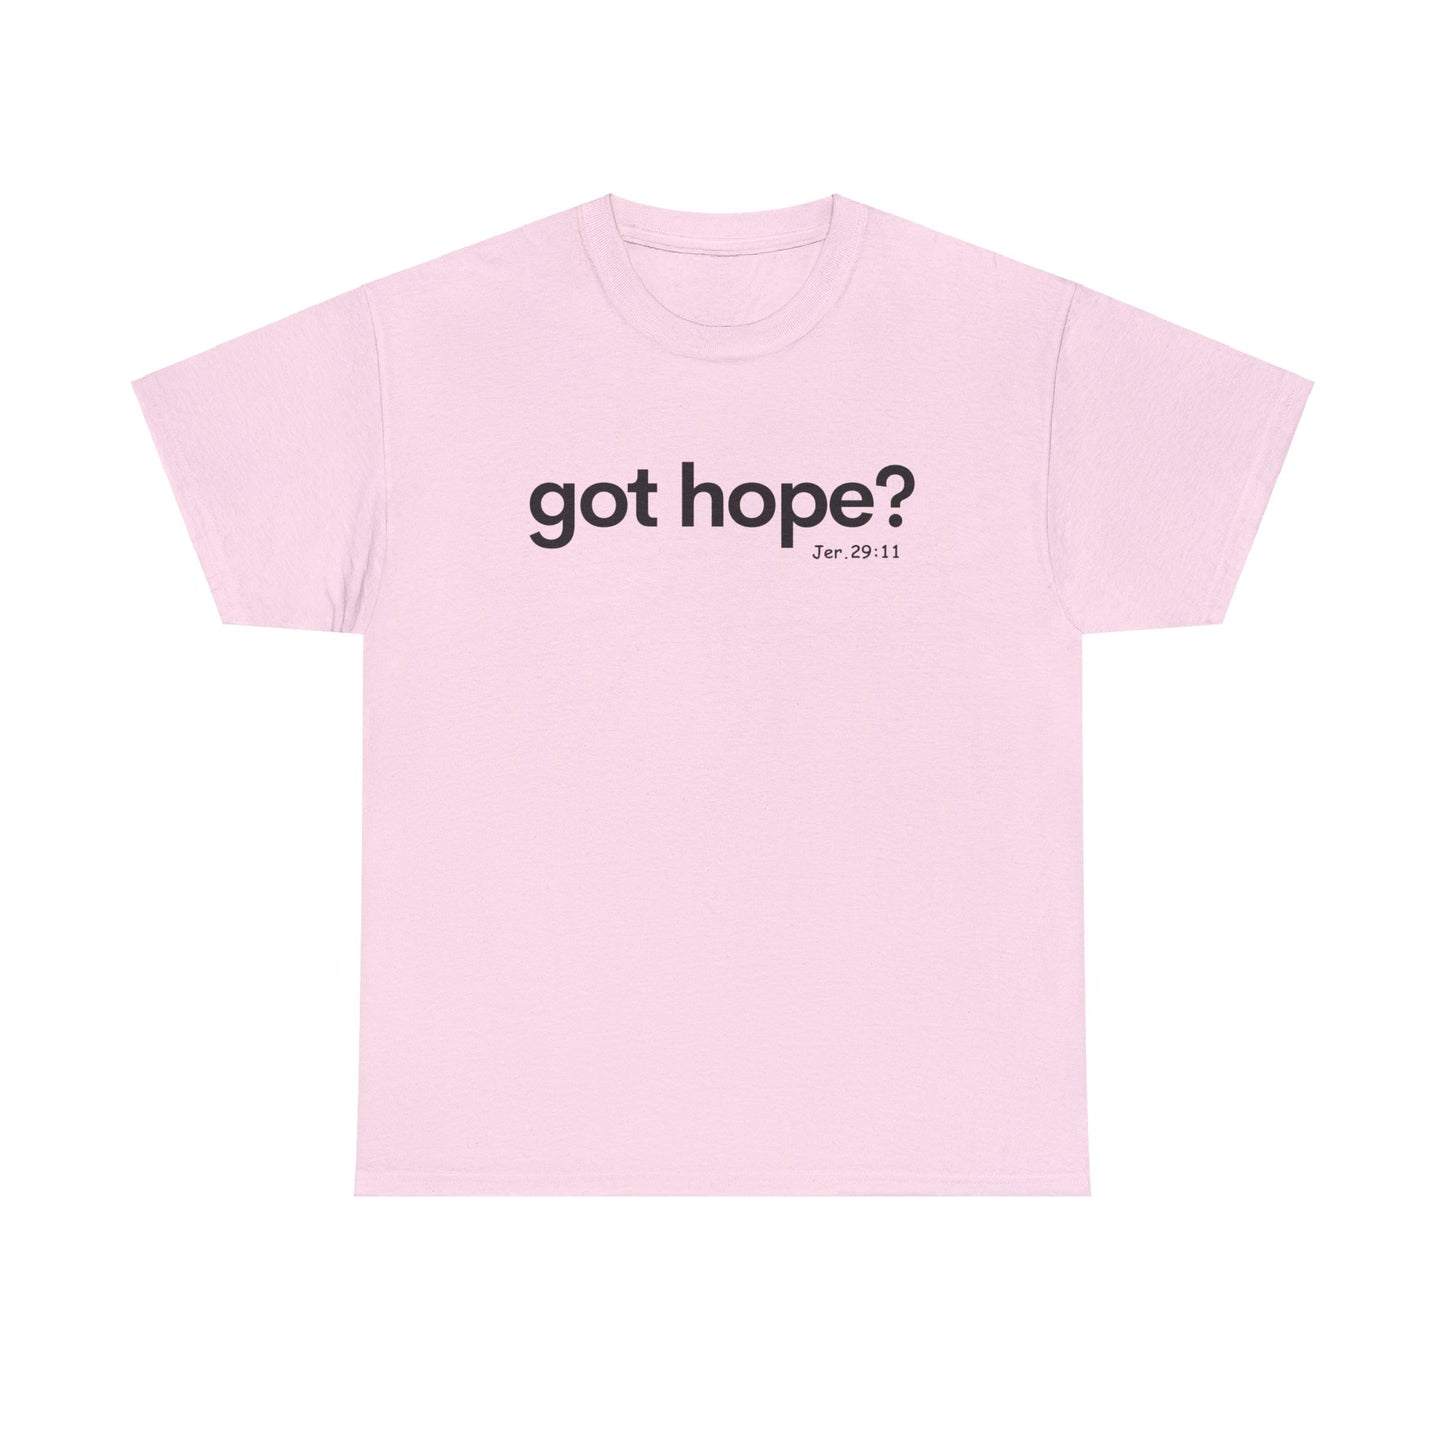 Got Hope? Jeremiah 29:11 tshirt